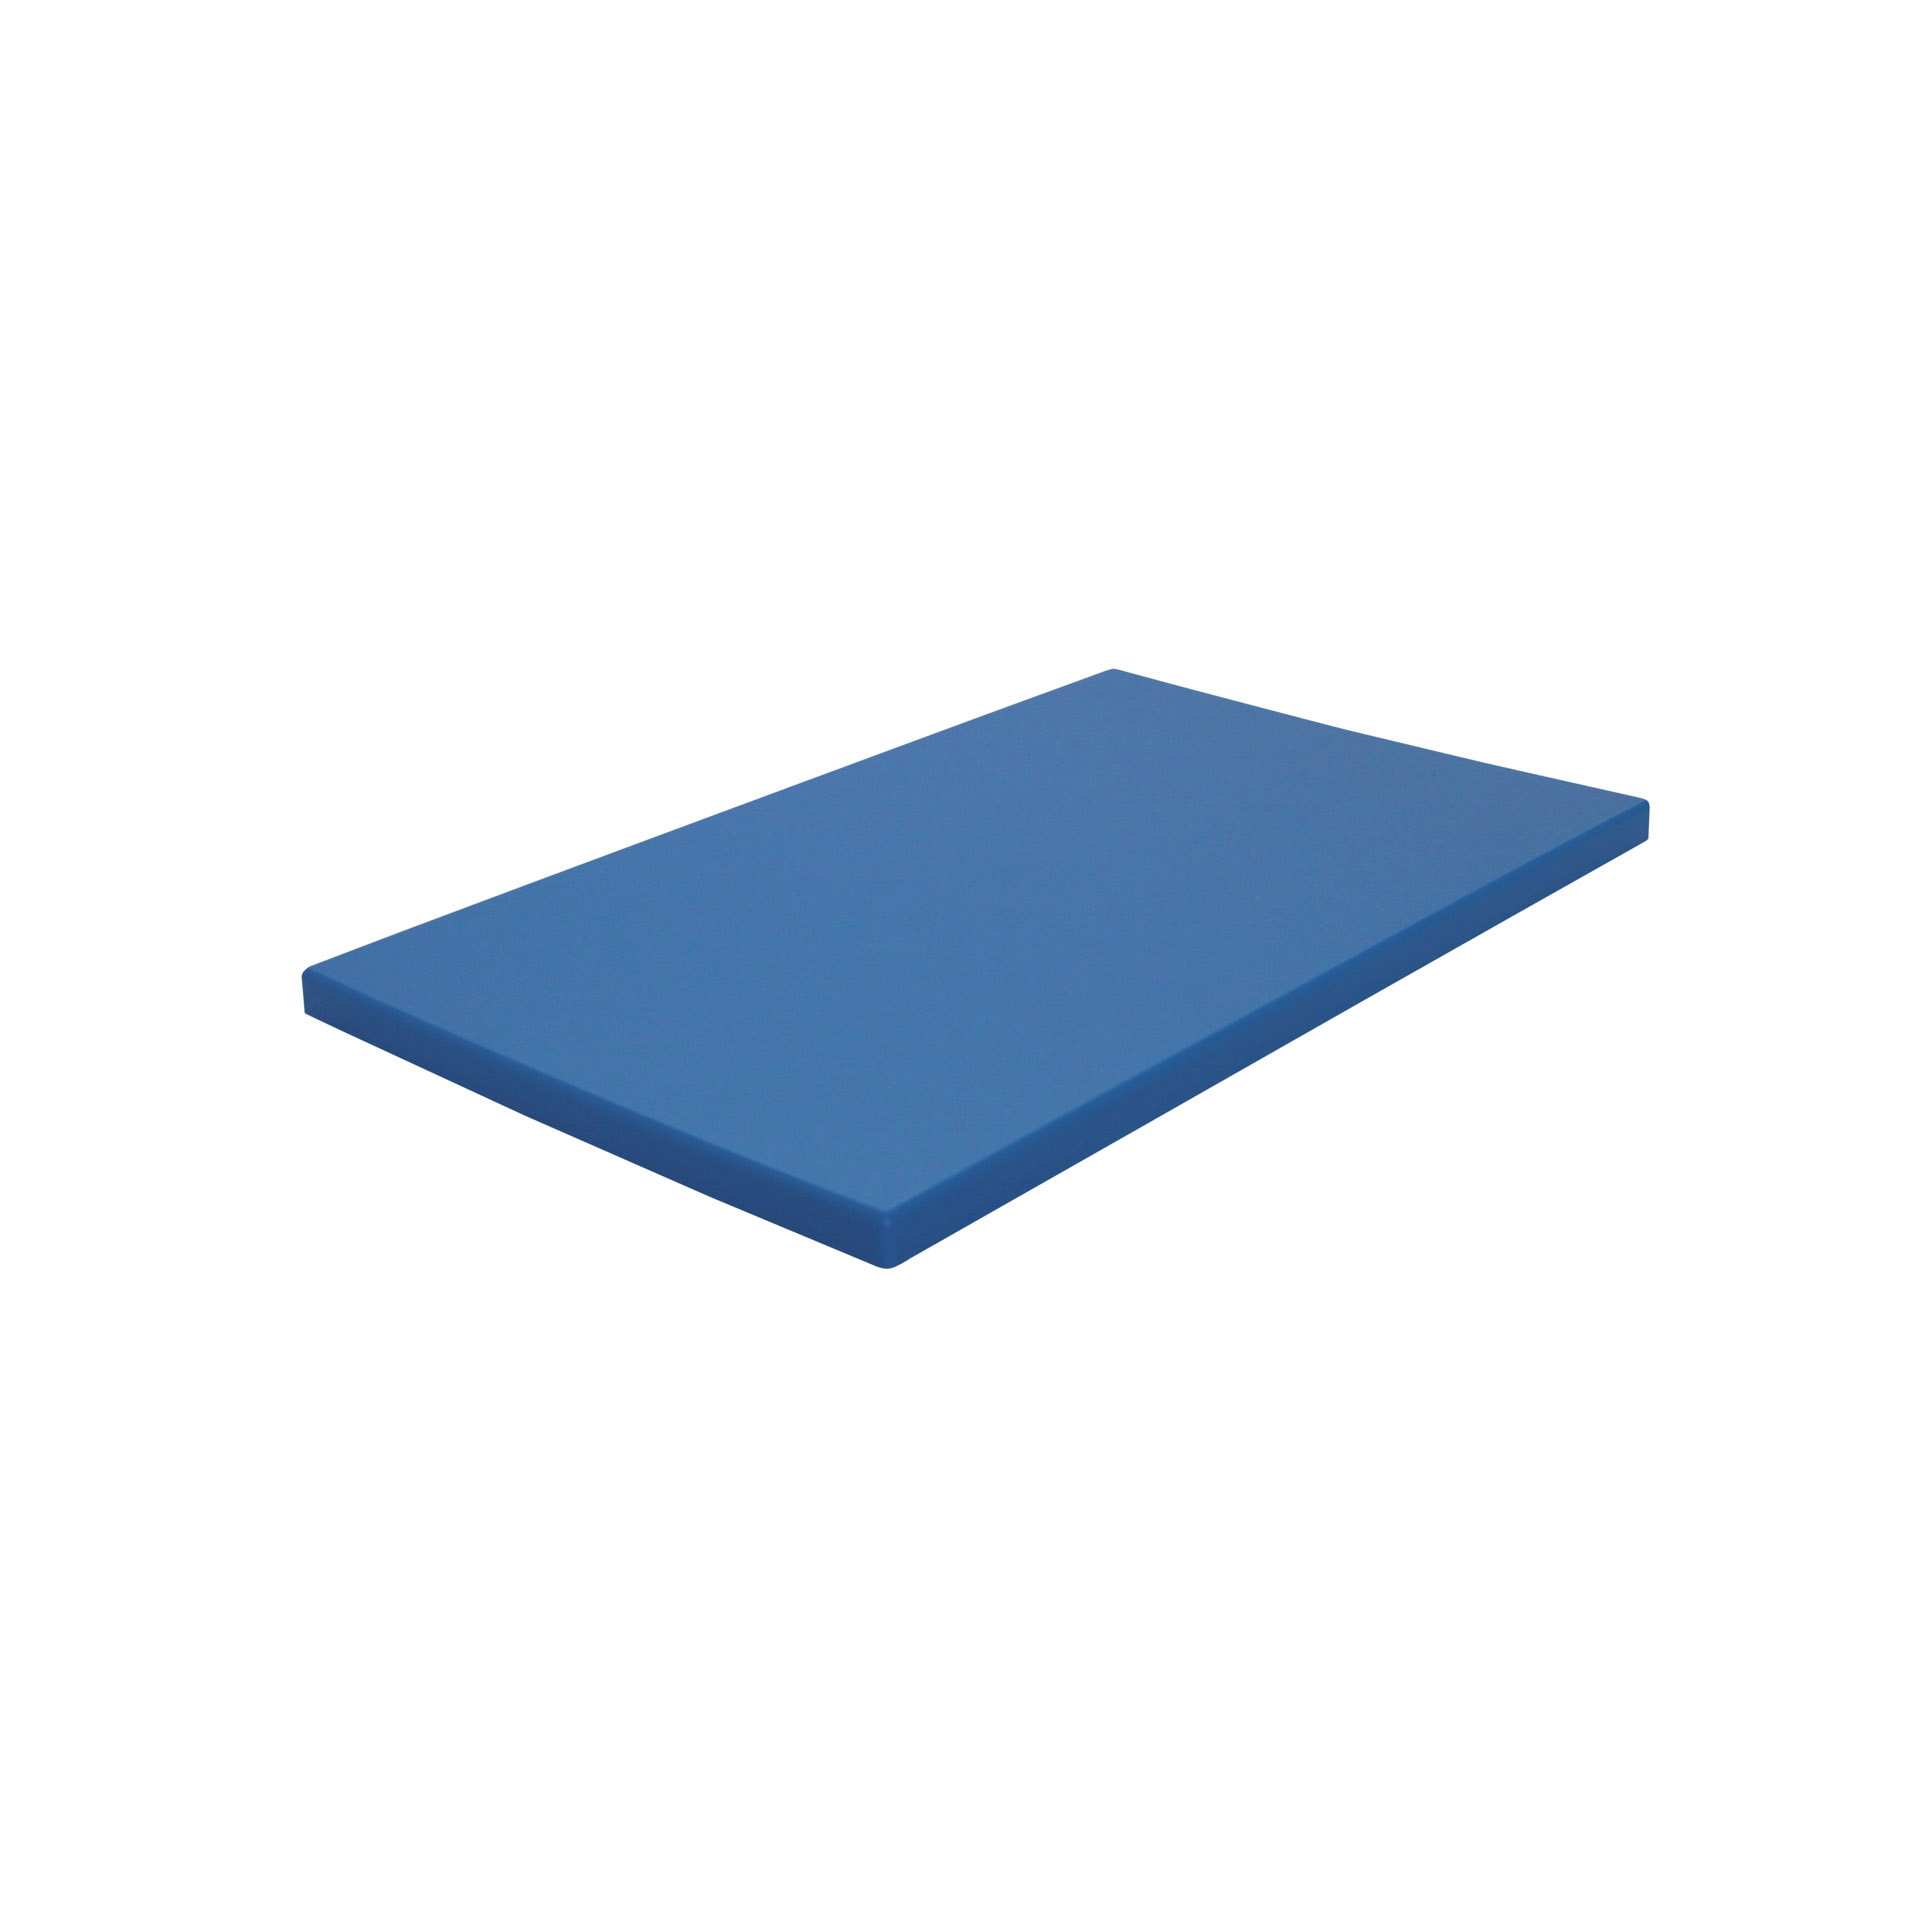 GN-Schneidebrett - mit Füßen - blau - GN 1/1 (530 x 325 mm) - Polyethylen - 228315-C